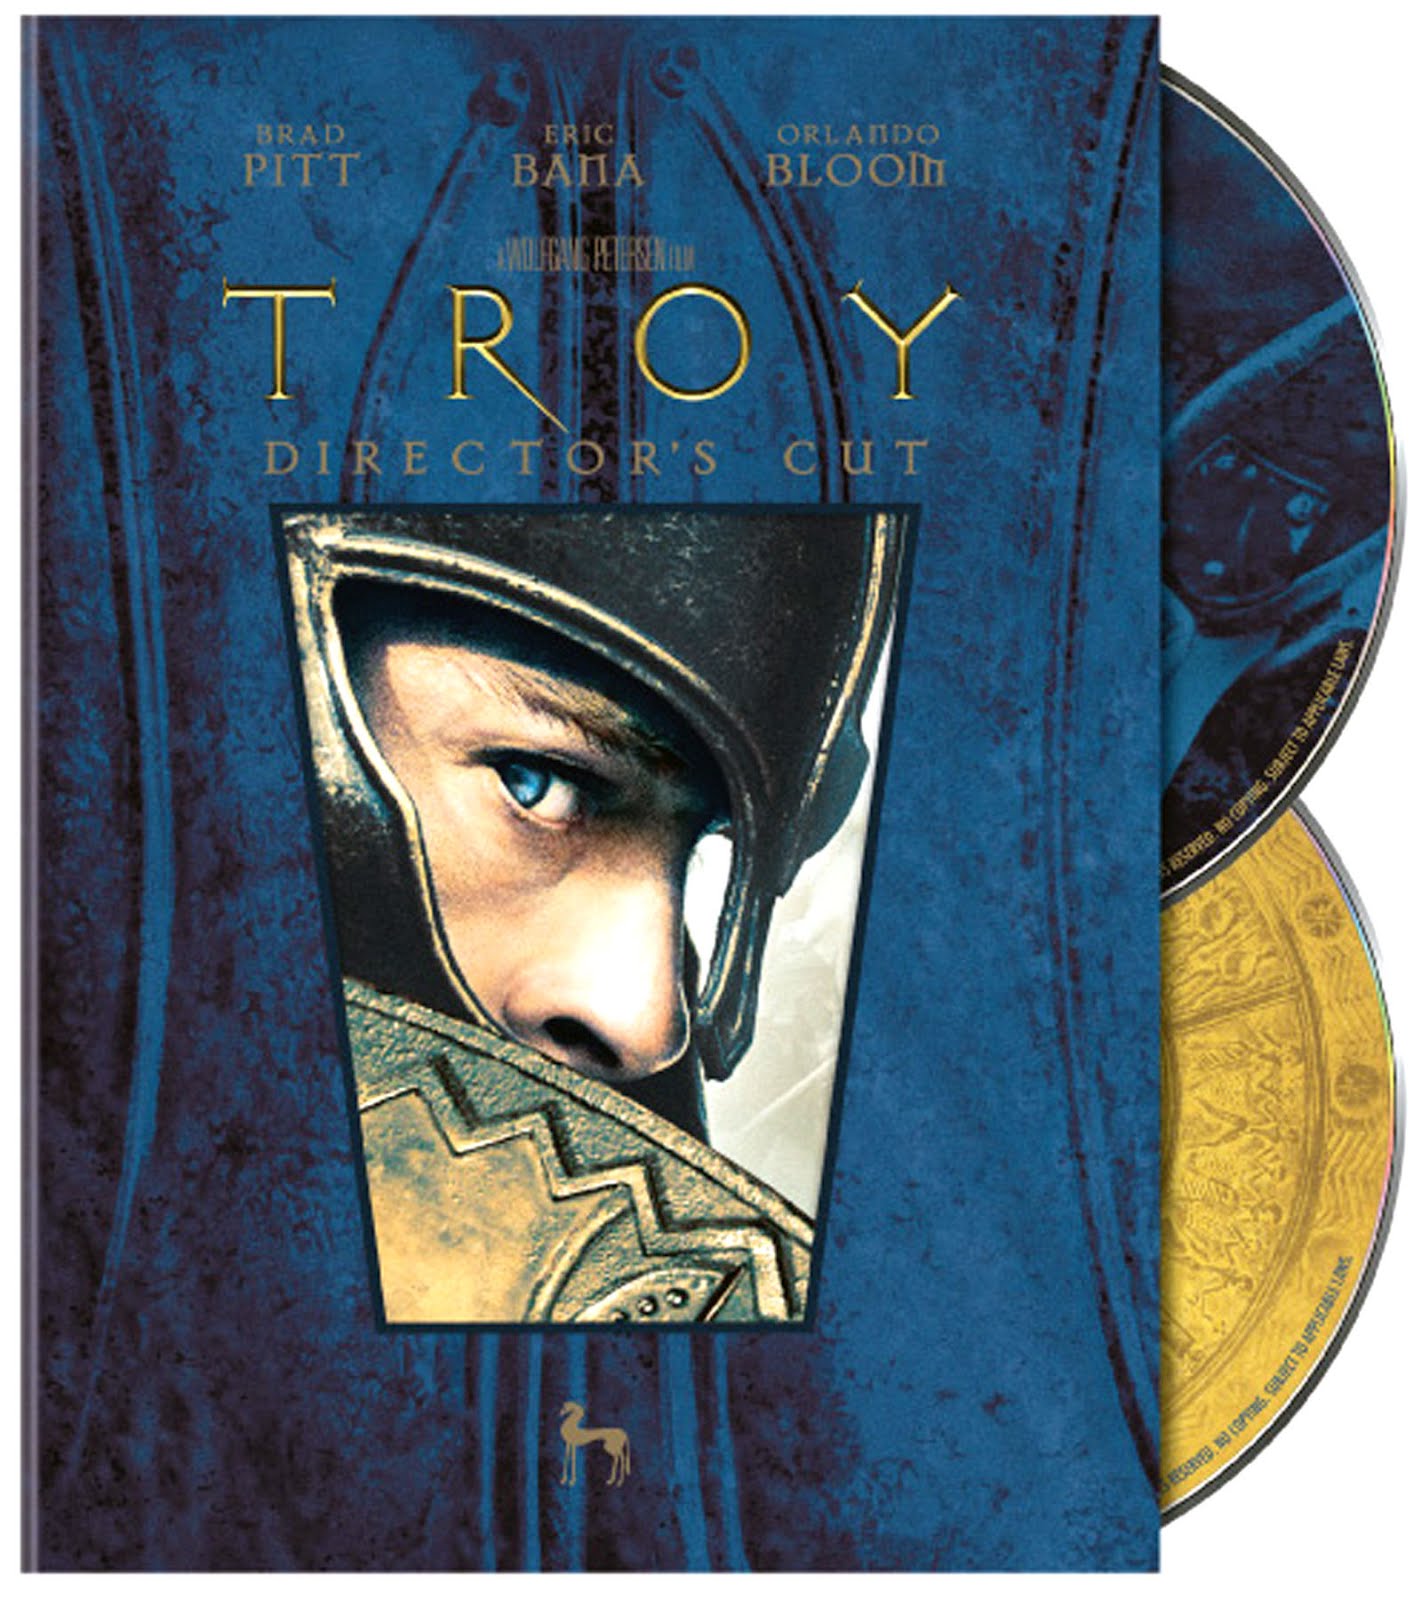 Troy Director's Cut Dvd Case